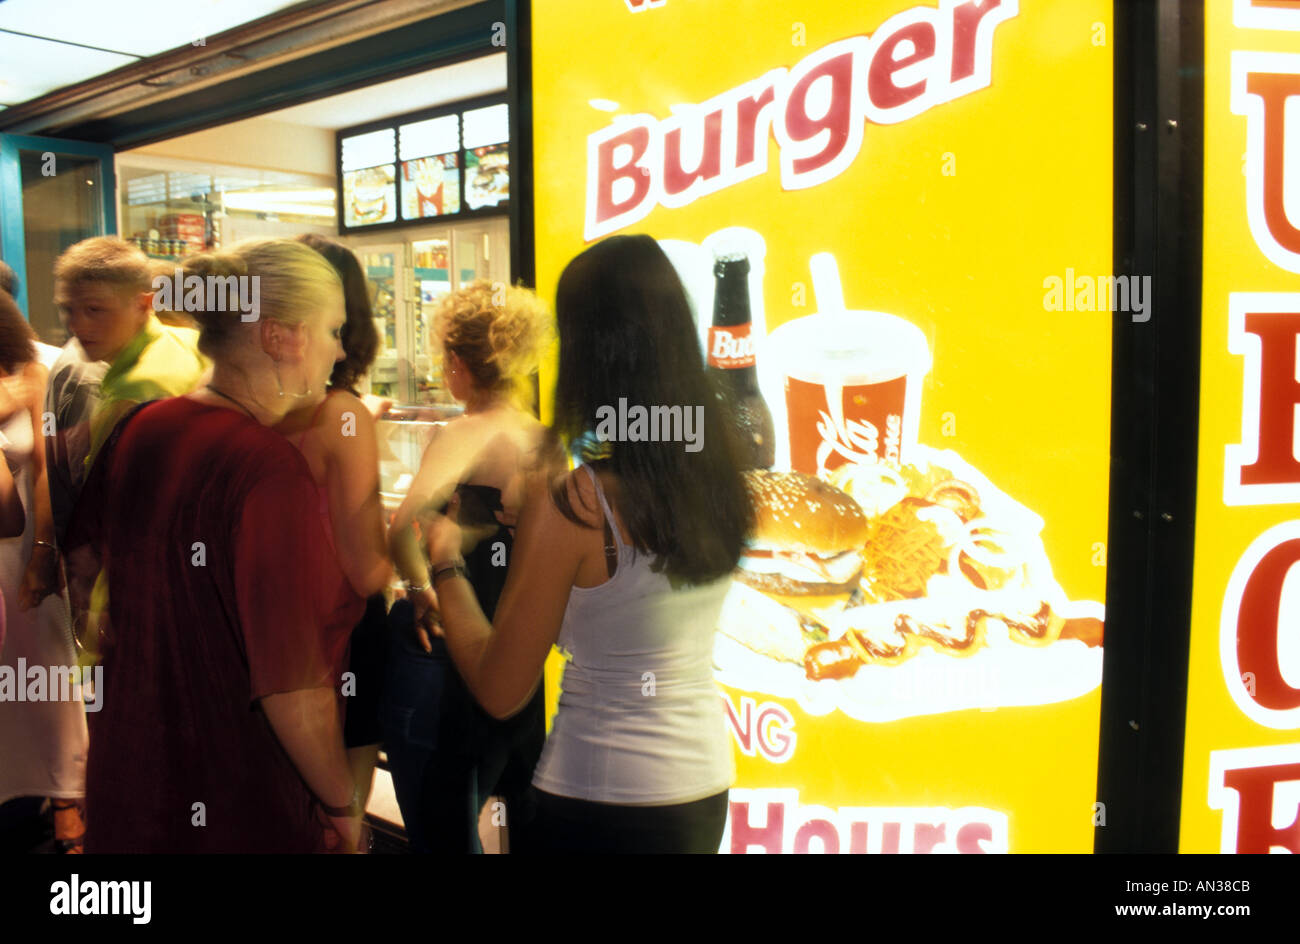 Fast food burger take away in San Antonio, Ibiza Stock Photo